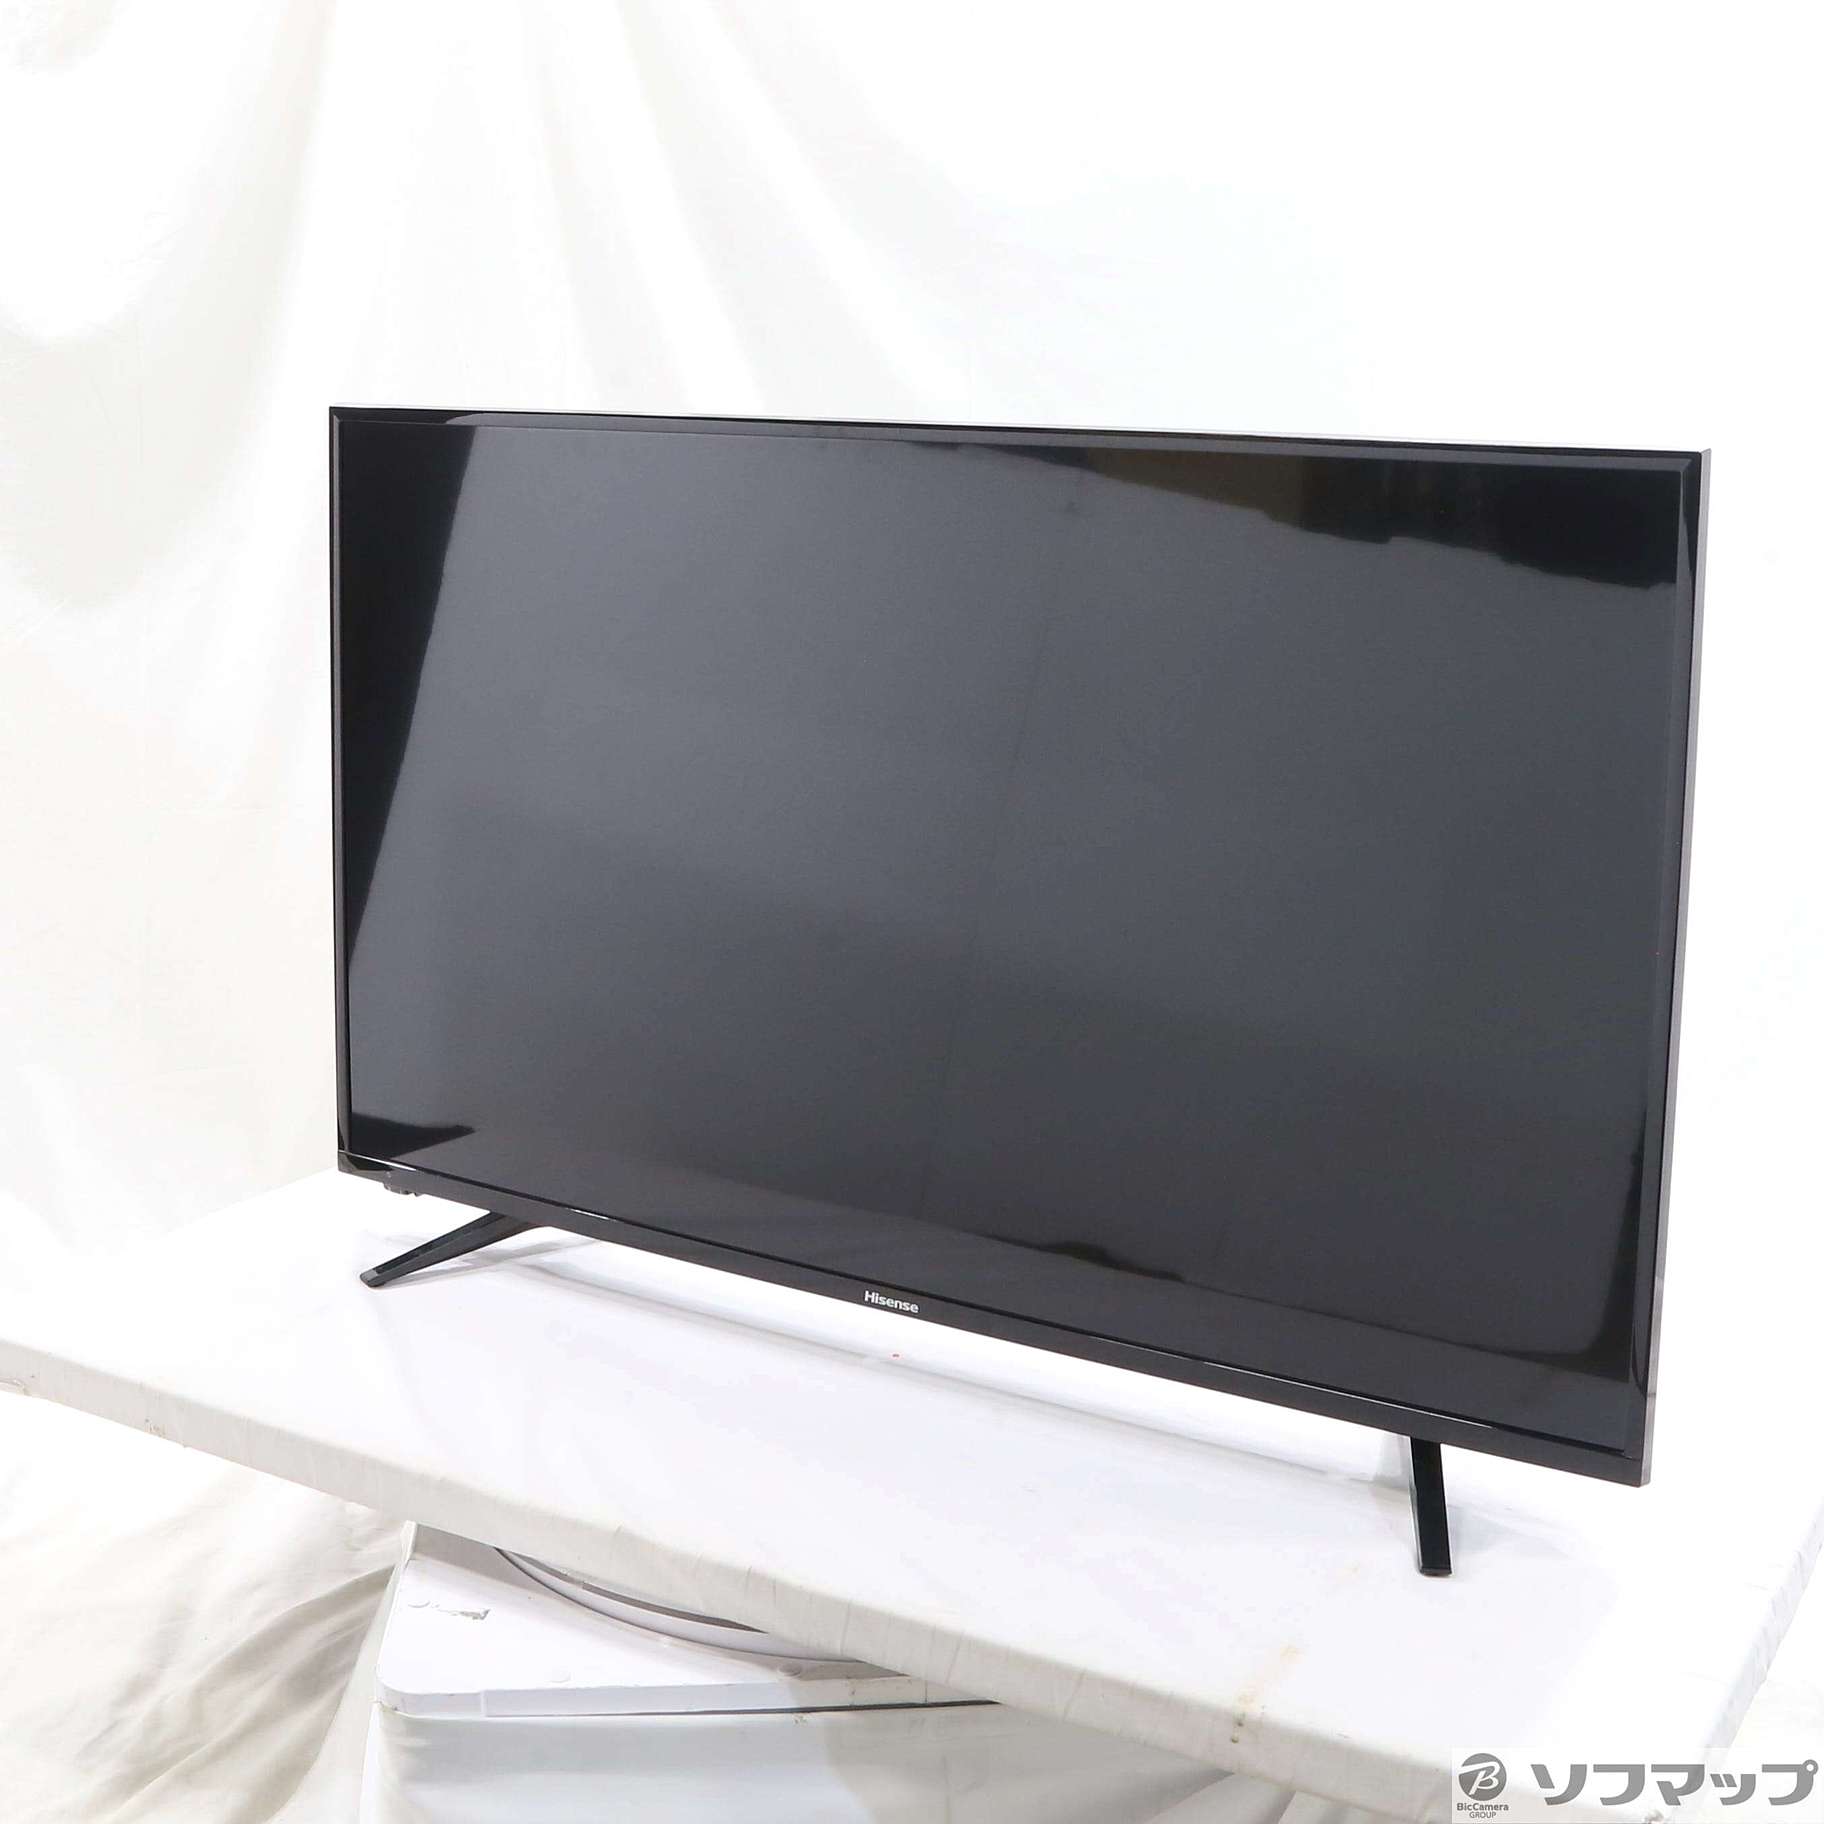 ハイセンス 43A50 フルハイビジョン液晶 テレビ IPSパネル 43型 - テレビ